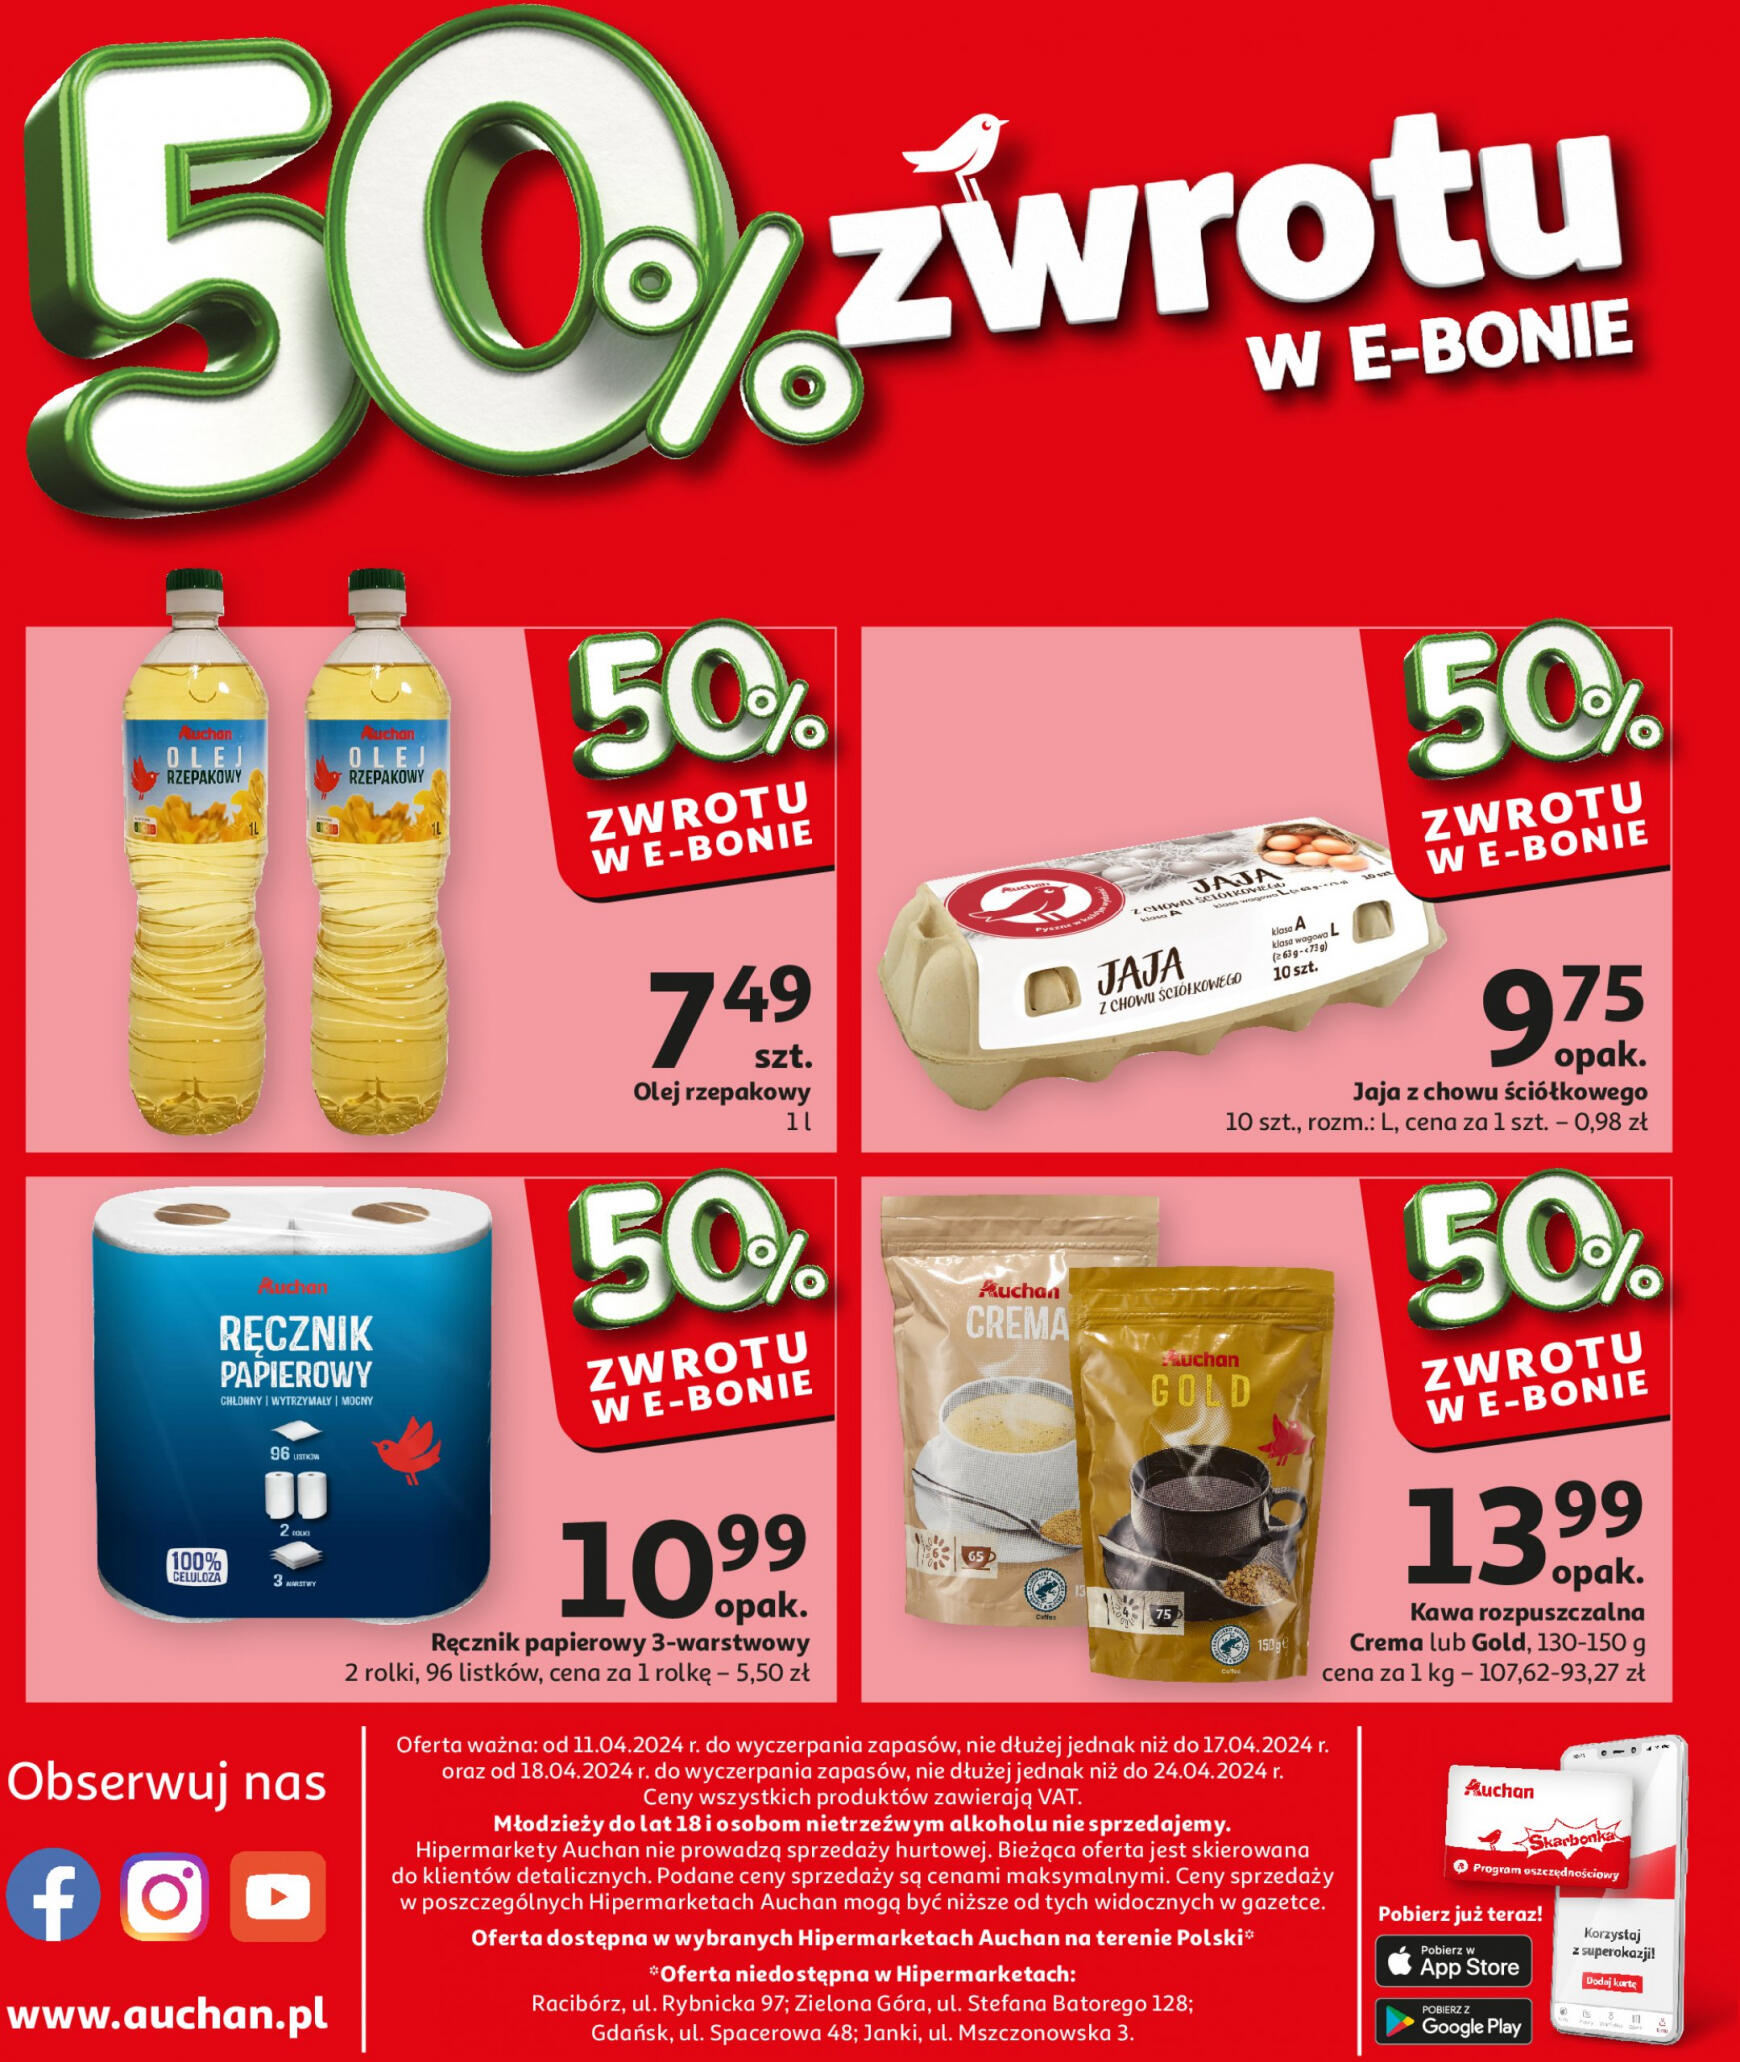 auchan - Auchan - Oferta 50% zwrotu w e-bonie gazetka aktualna ważna od 18.04. - 24.04. - page: 2